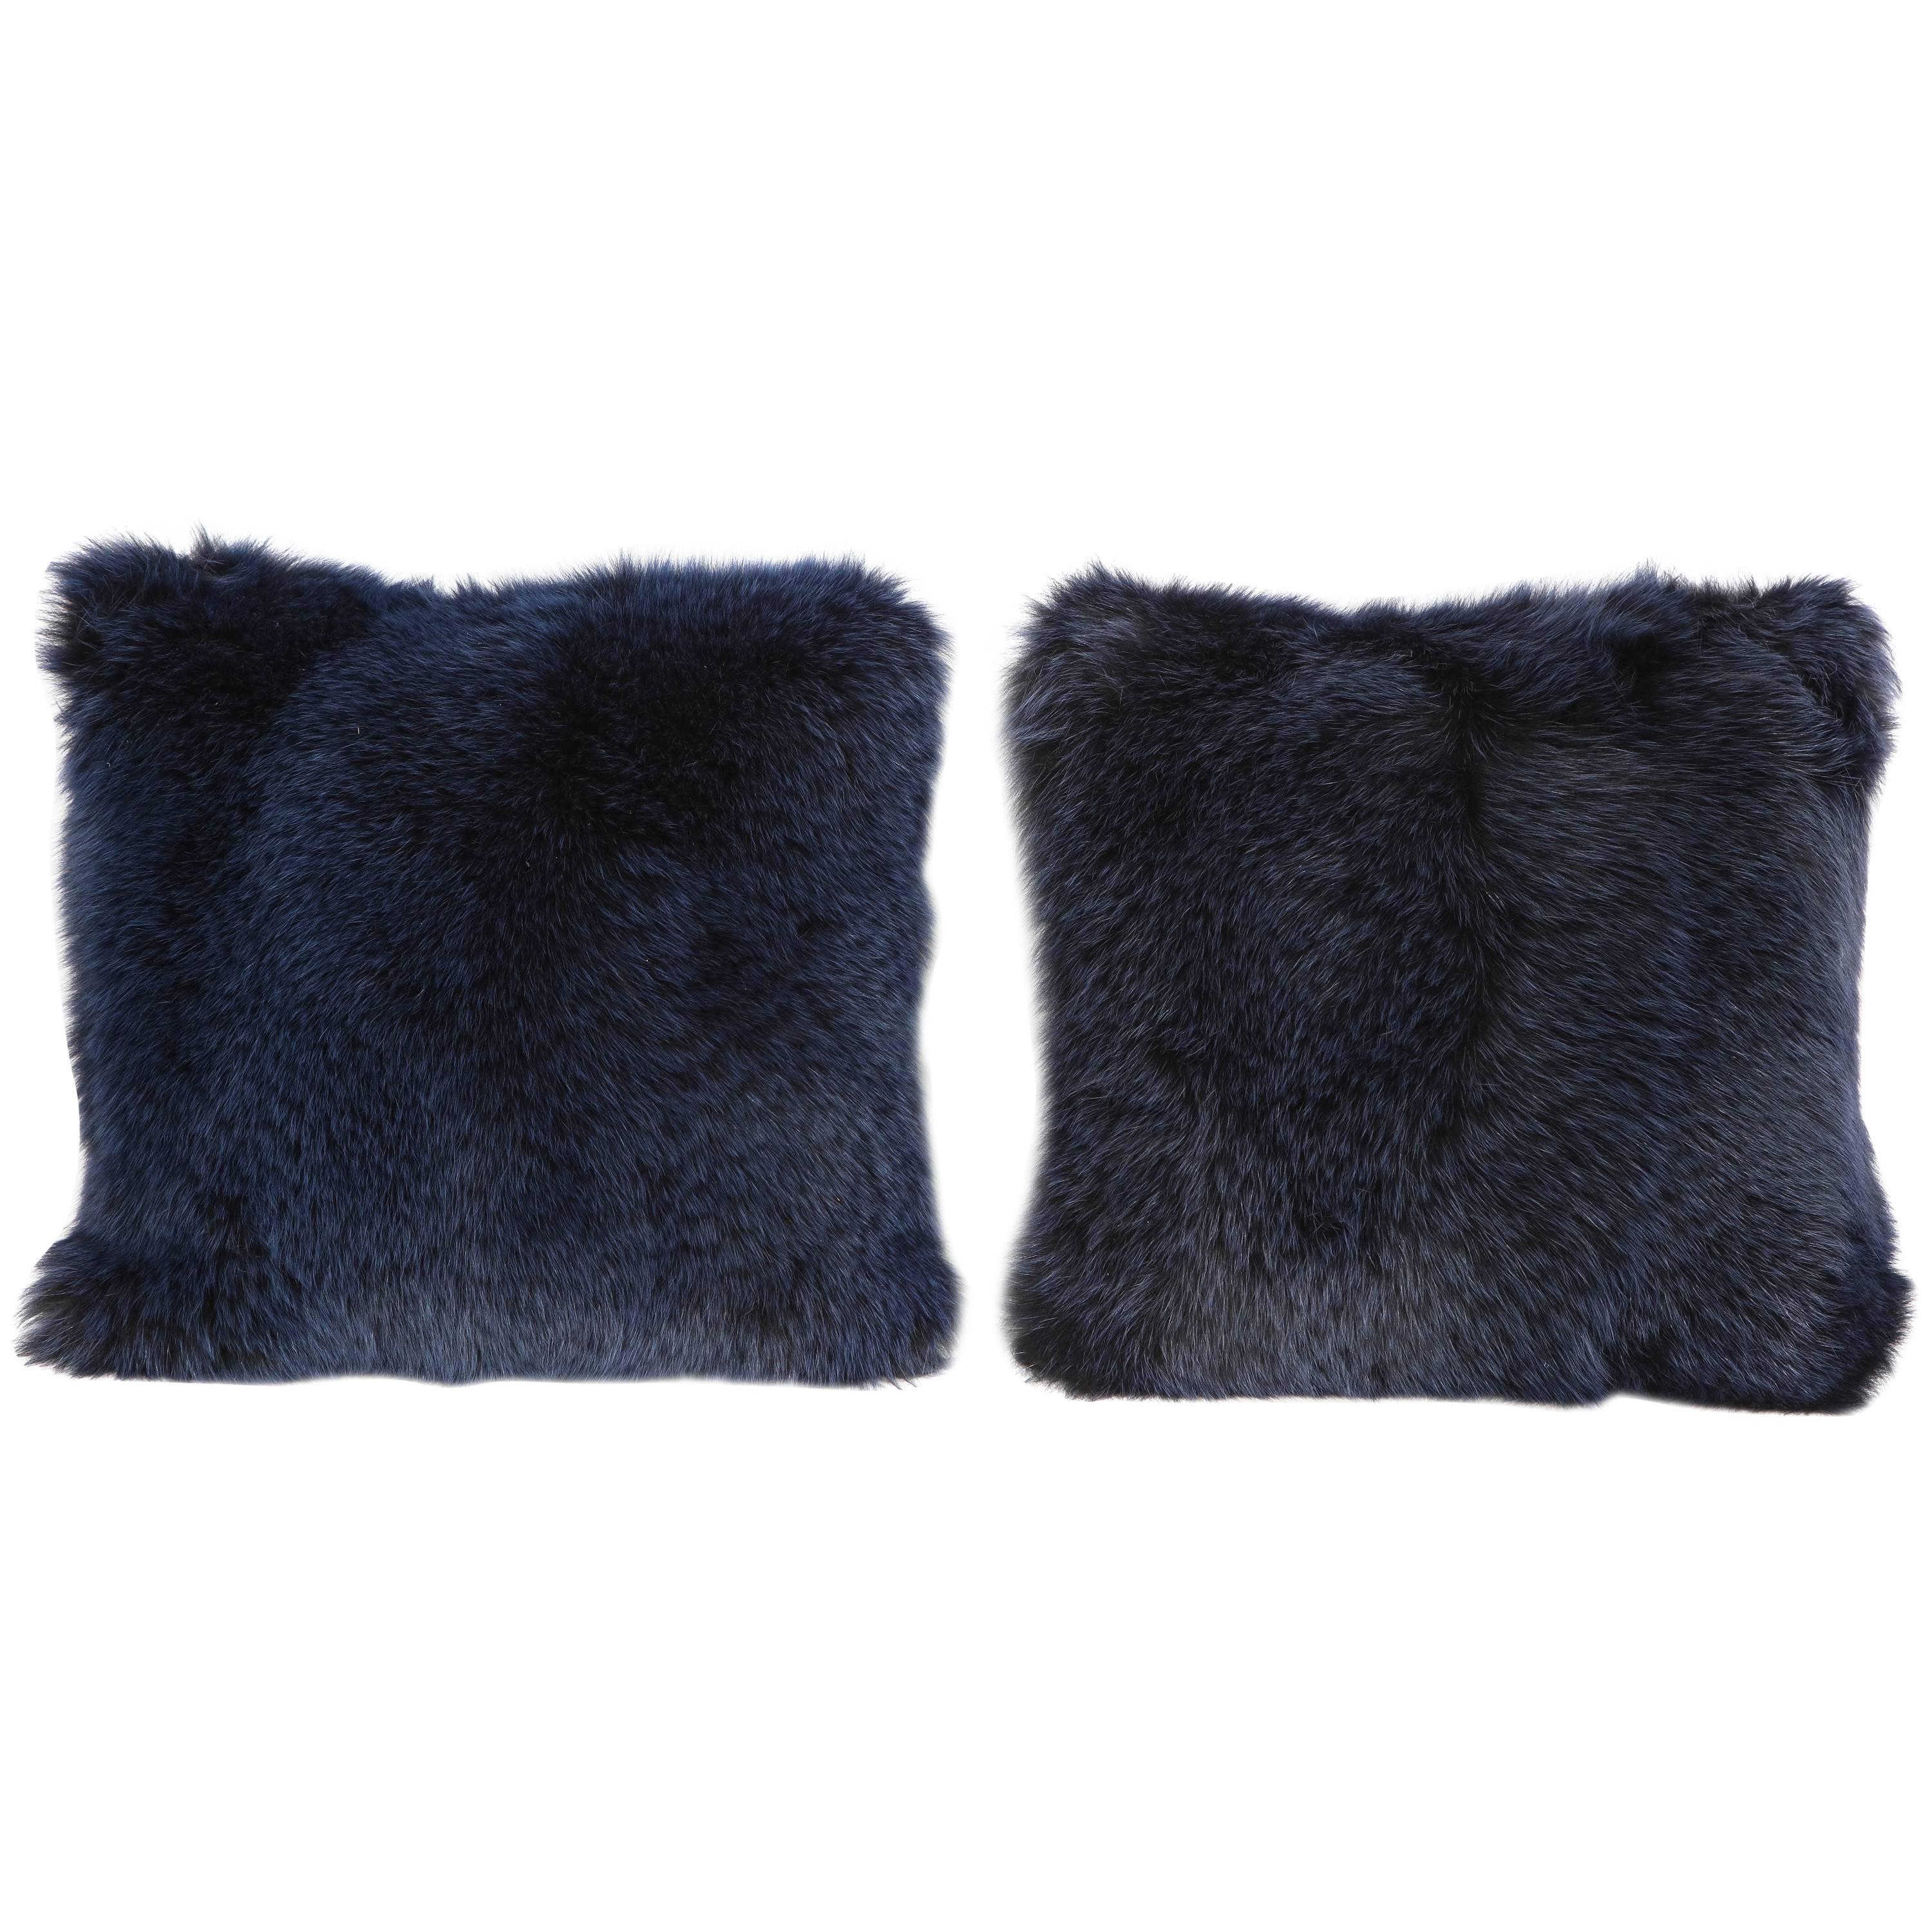 Pair of Navy Fur Pillows